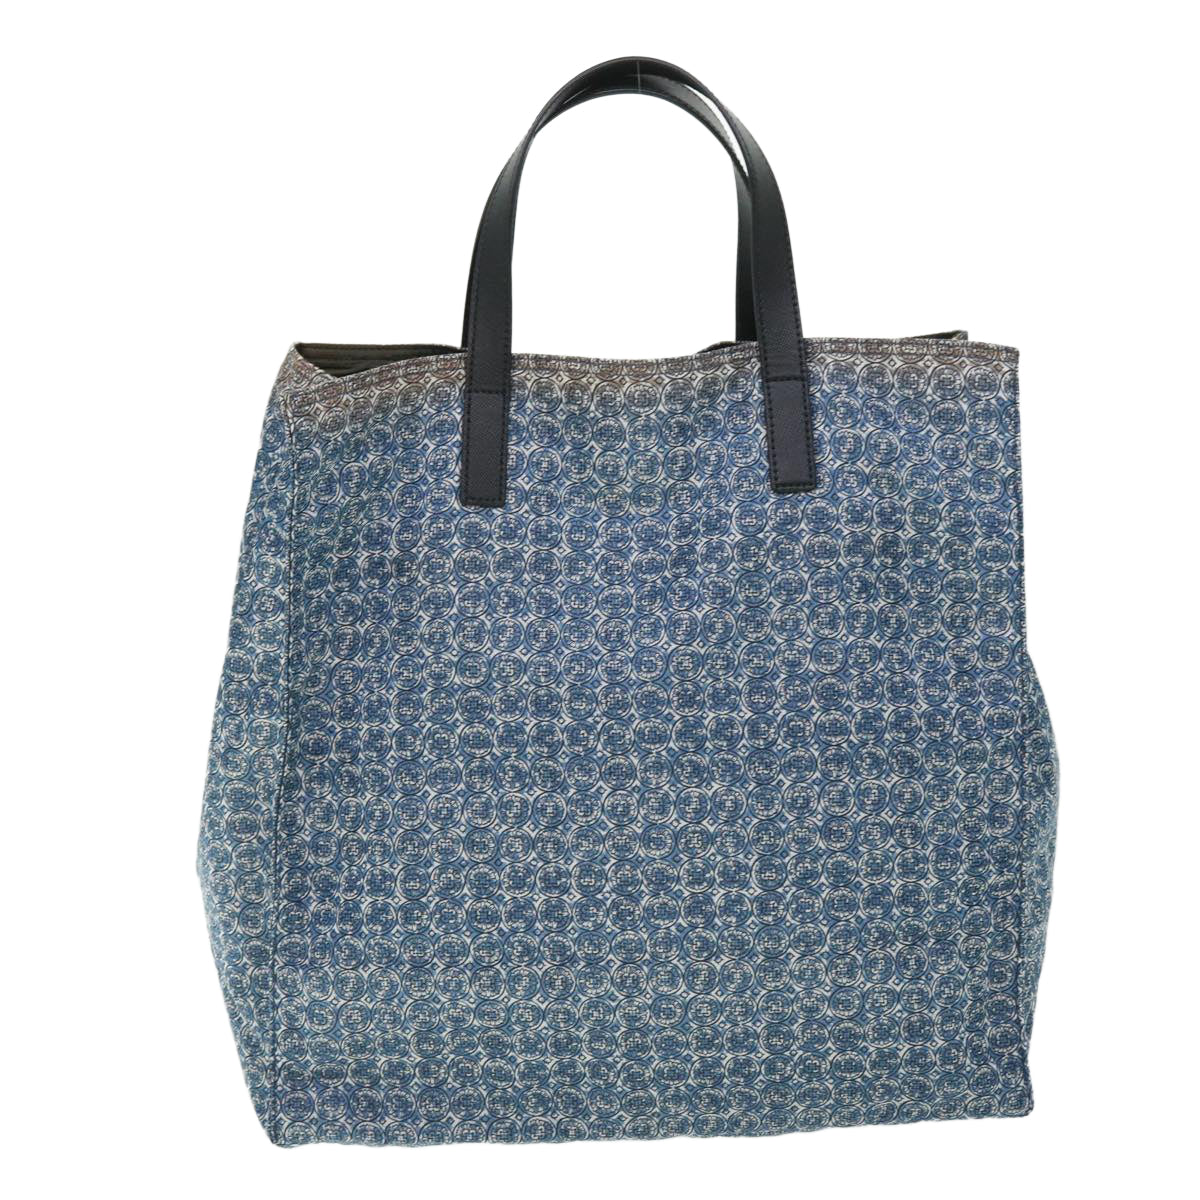 PRADA Tote Bag Nylon Leather Blue White Auth 53703 - 0